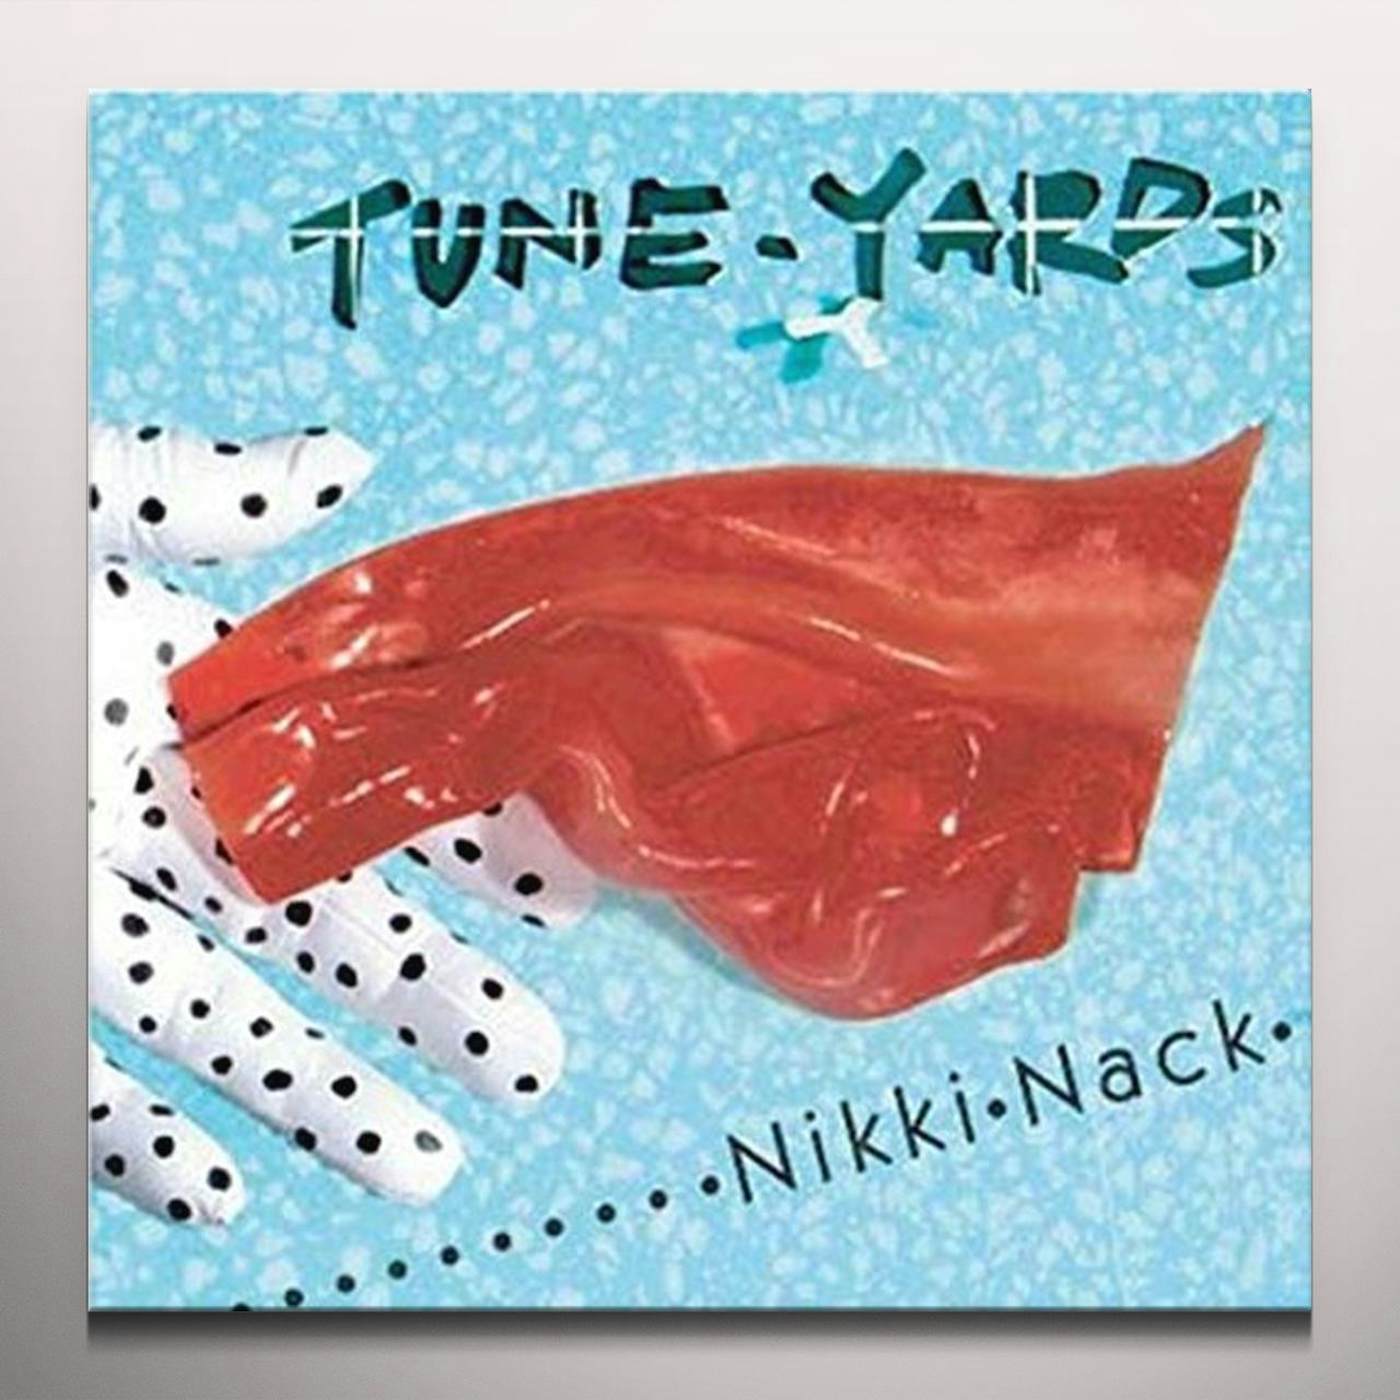 Tune-Yards NIKKI NACK (RED VINYL) (I) Vinyl Record